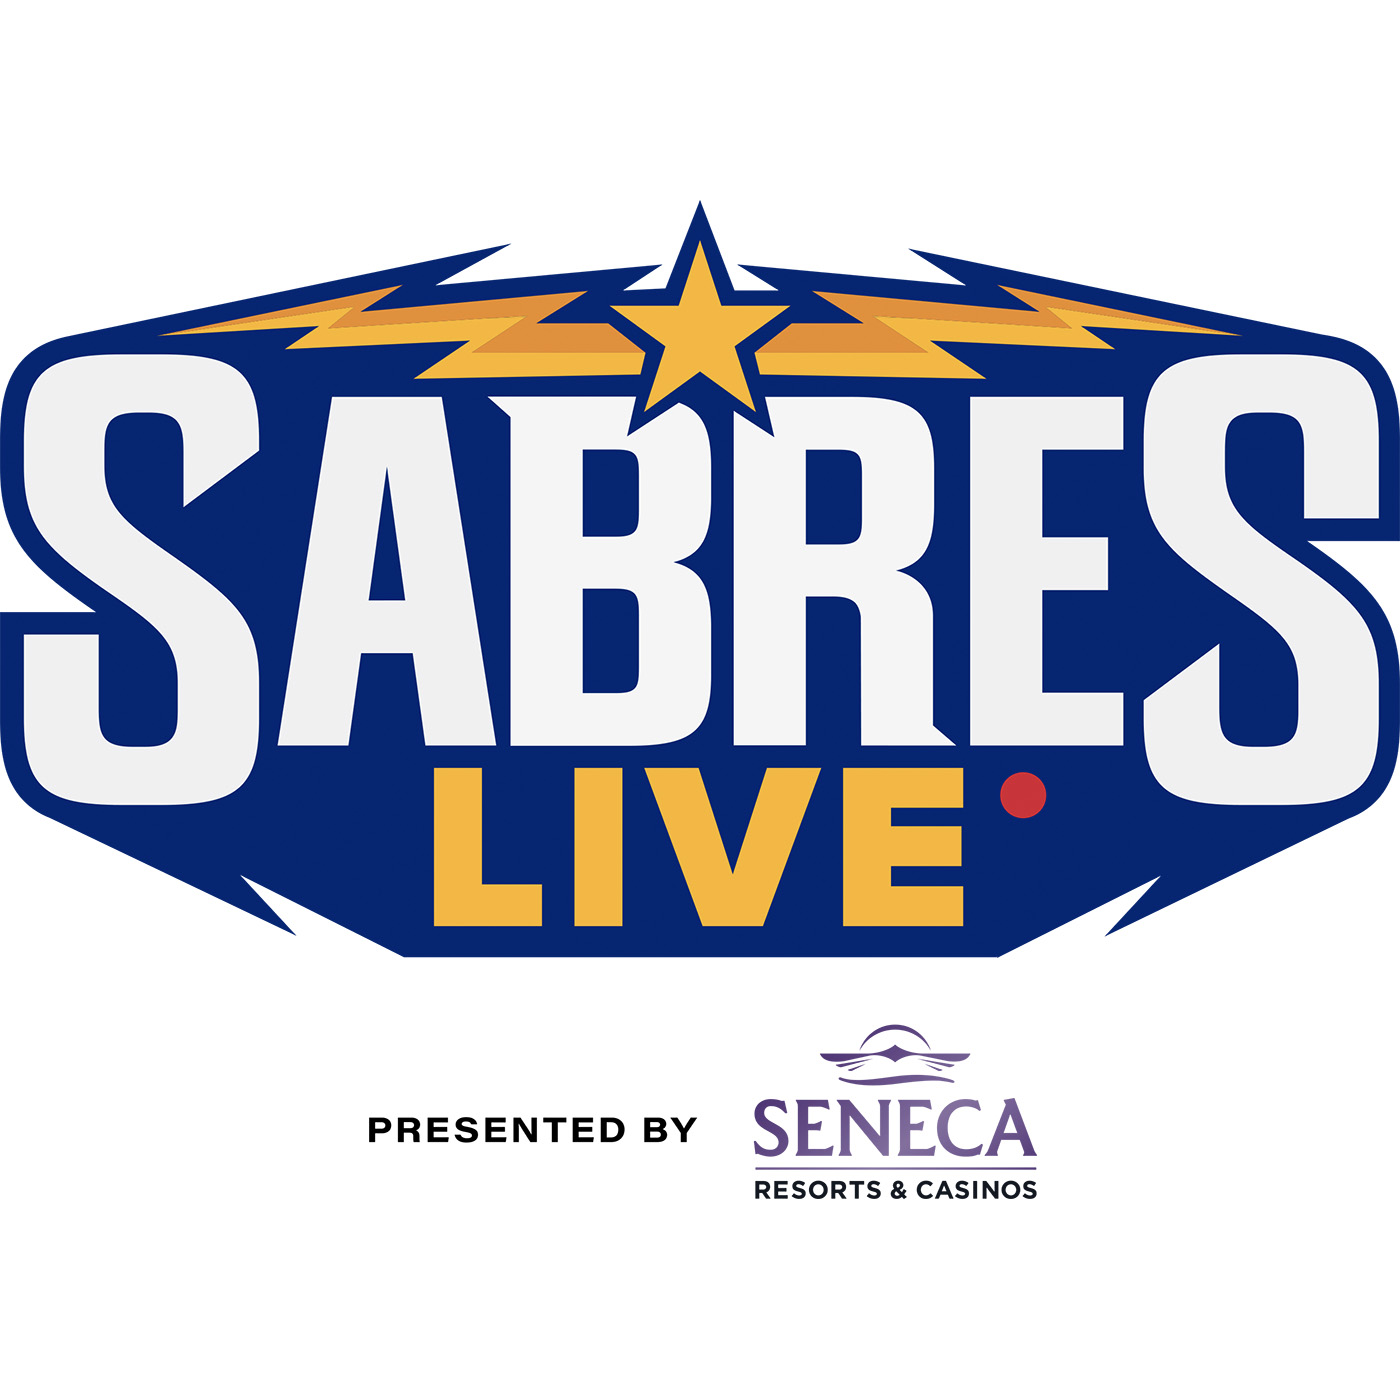 Sabres Live- 5/2 Full Show